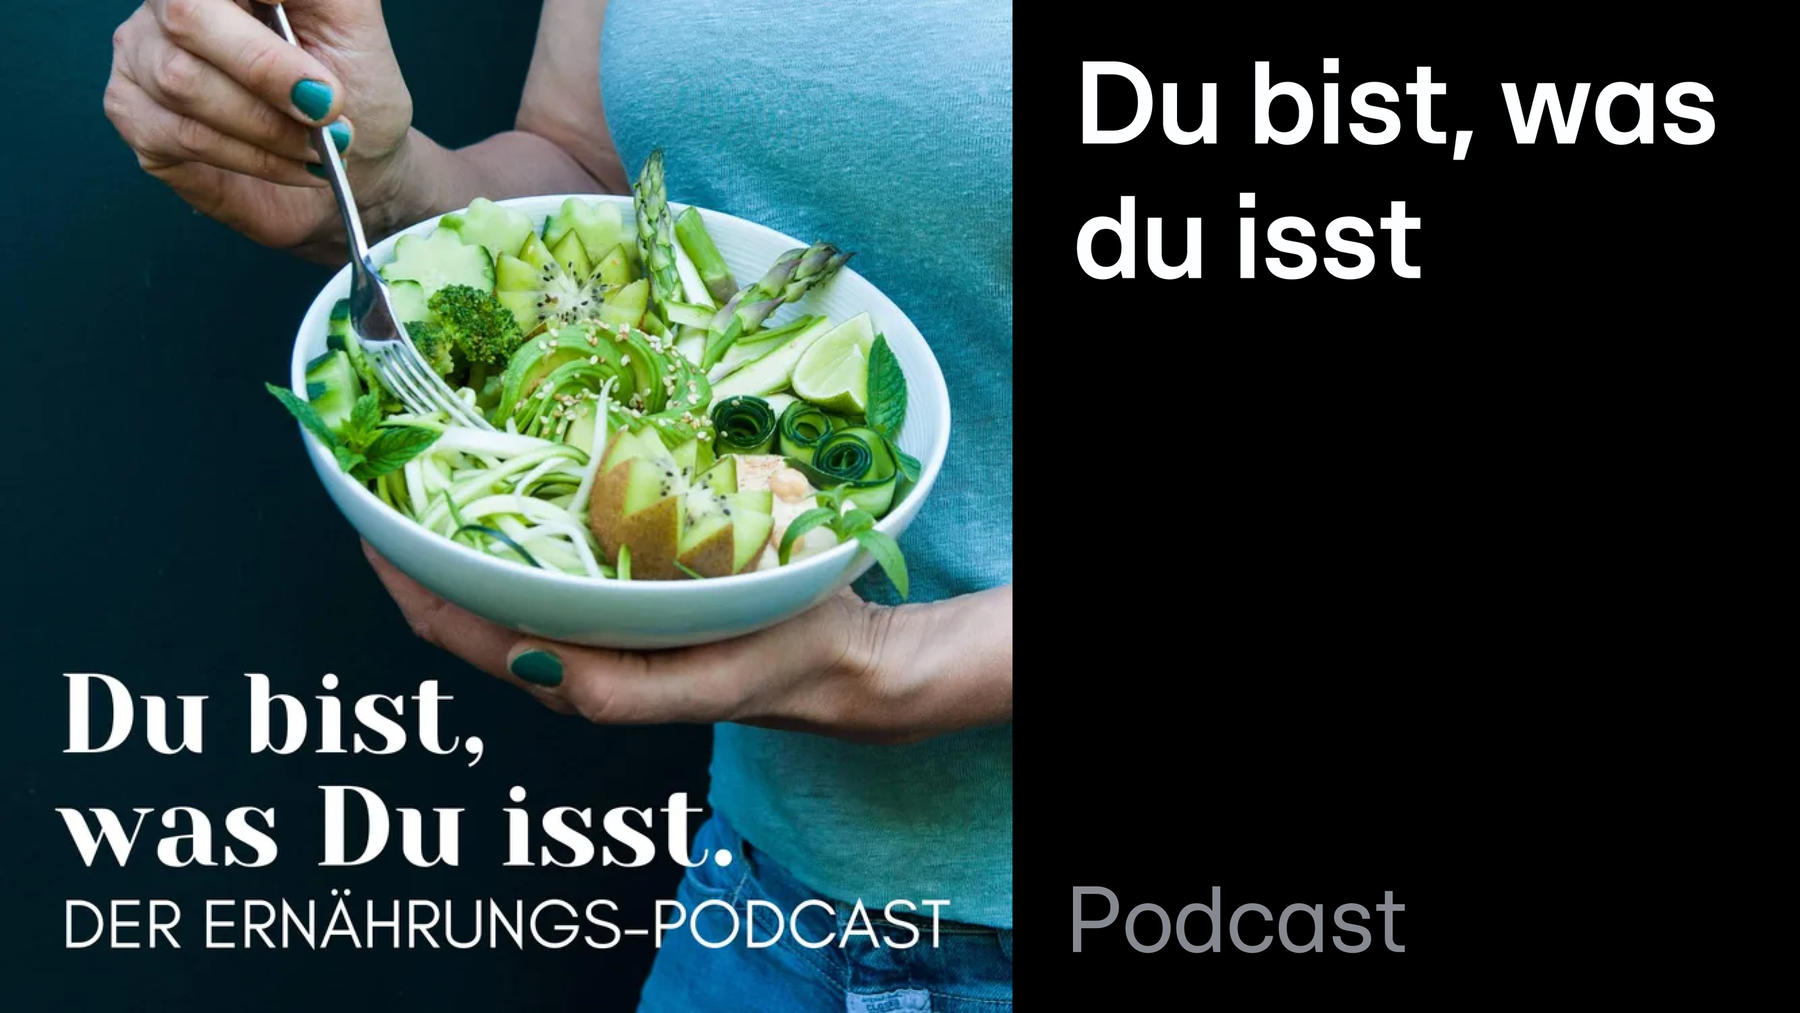 Podcast: Du bist, was du isst